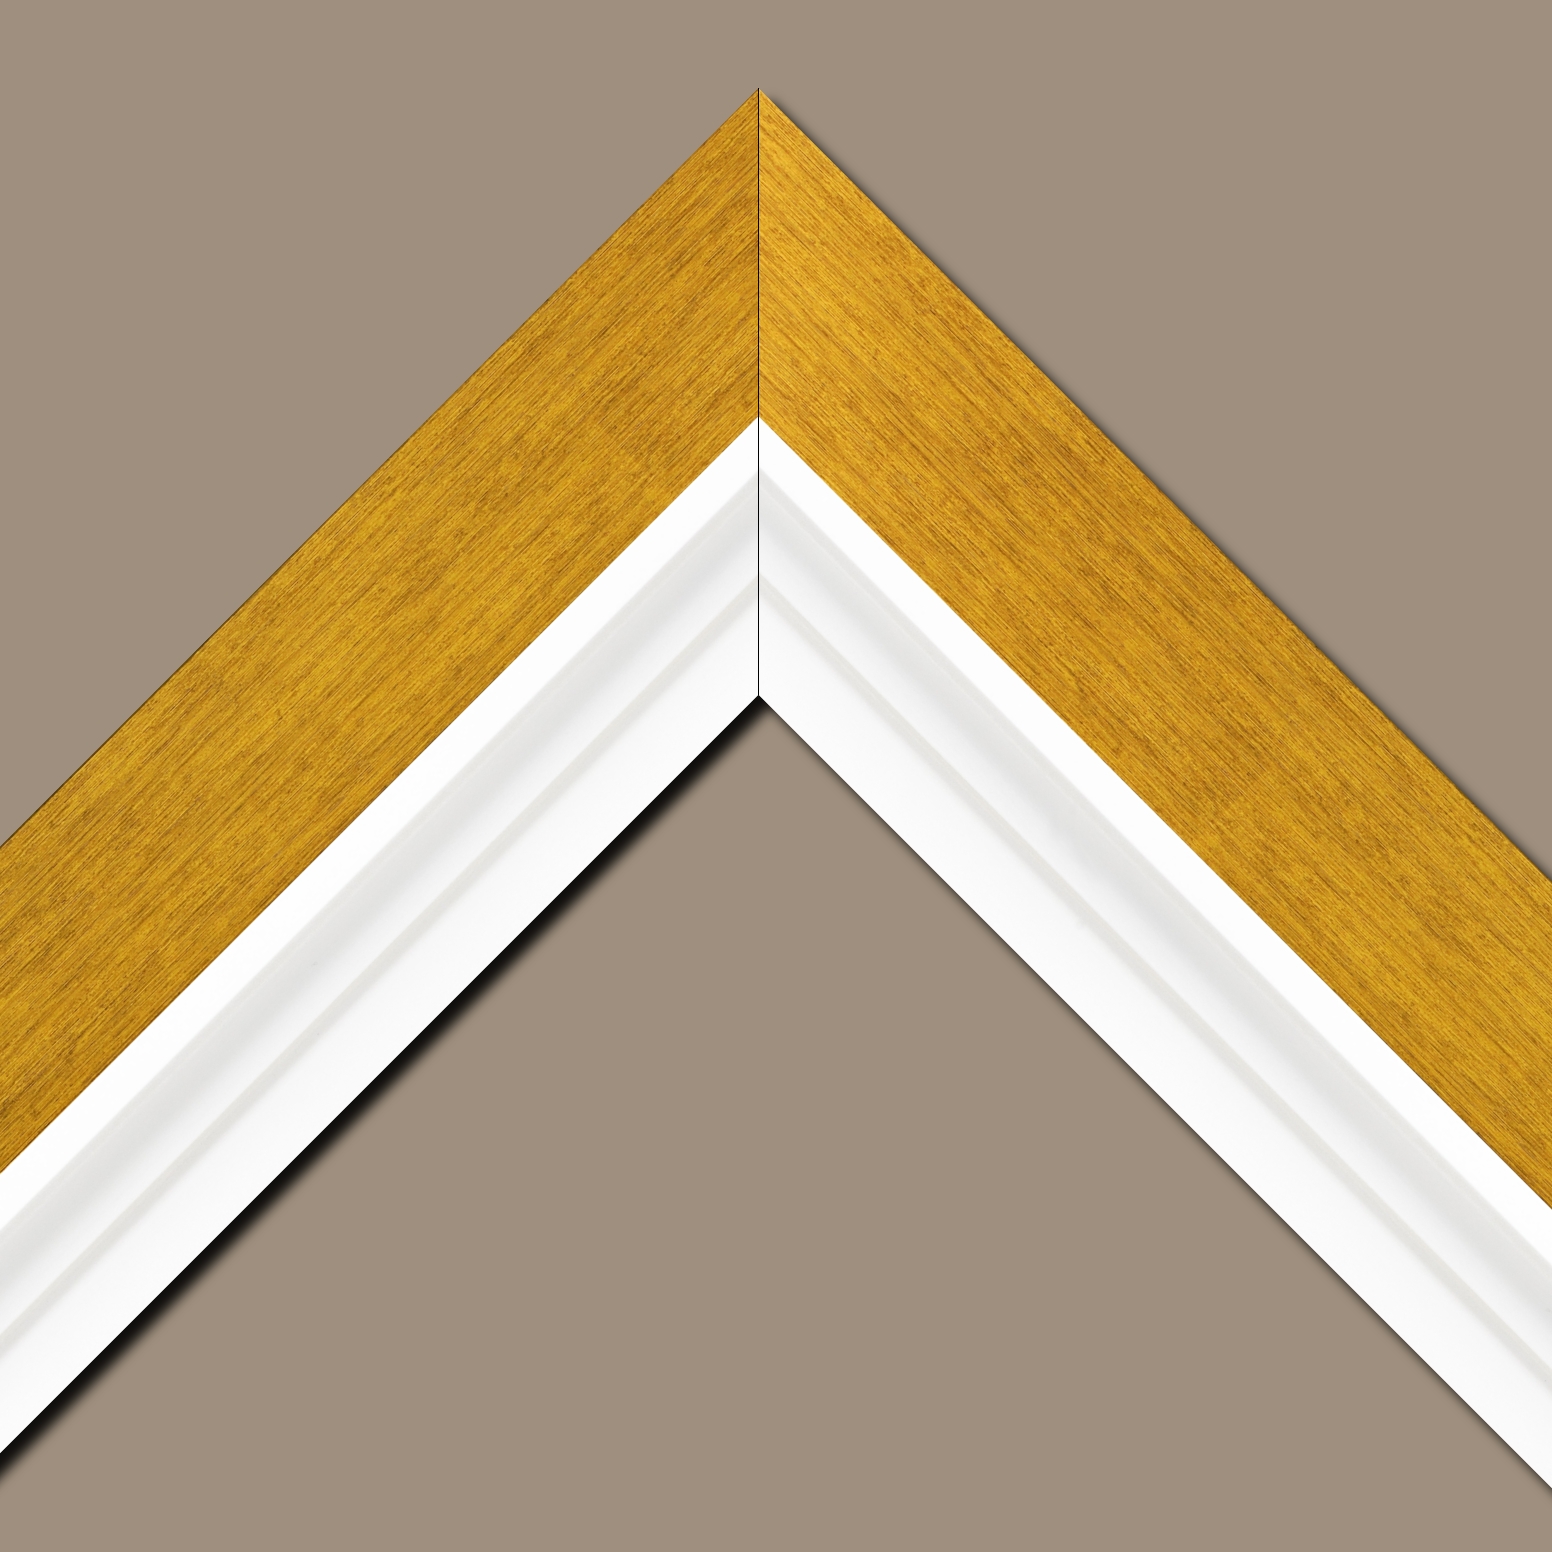 Baguette bois profil plat largeur 6cm couleur or contemporain satiné haut de gamme + bois caisse américaine profil escalier largeur 4.5cm blanc mat (spécialement conçu pour les châssis d'une épaisseur jusqu’à 2.5cm ) largeur totale du cadre 9.6cm